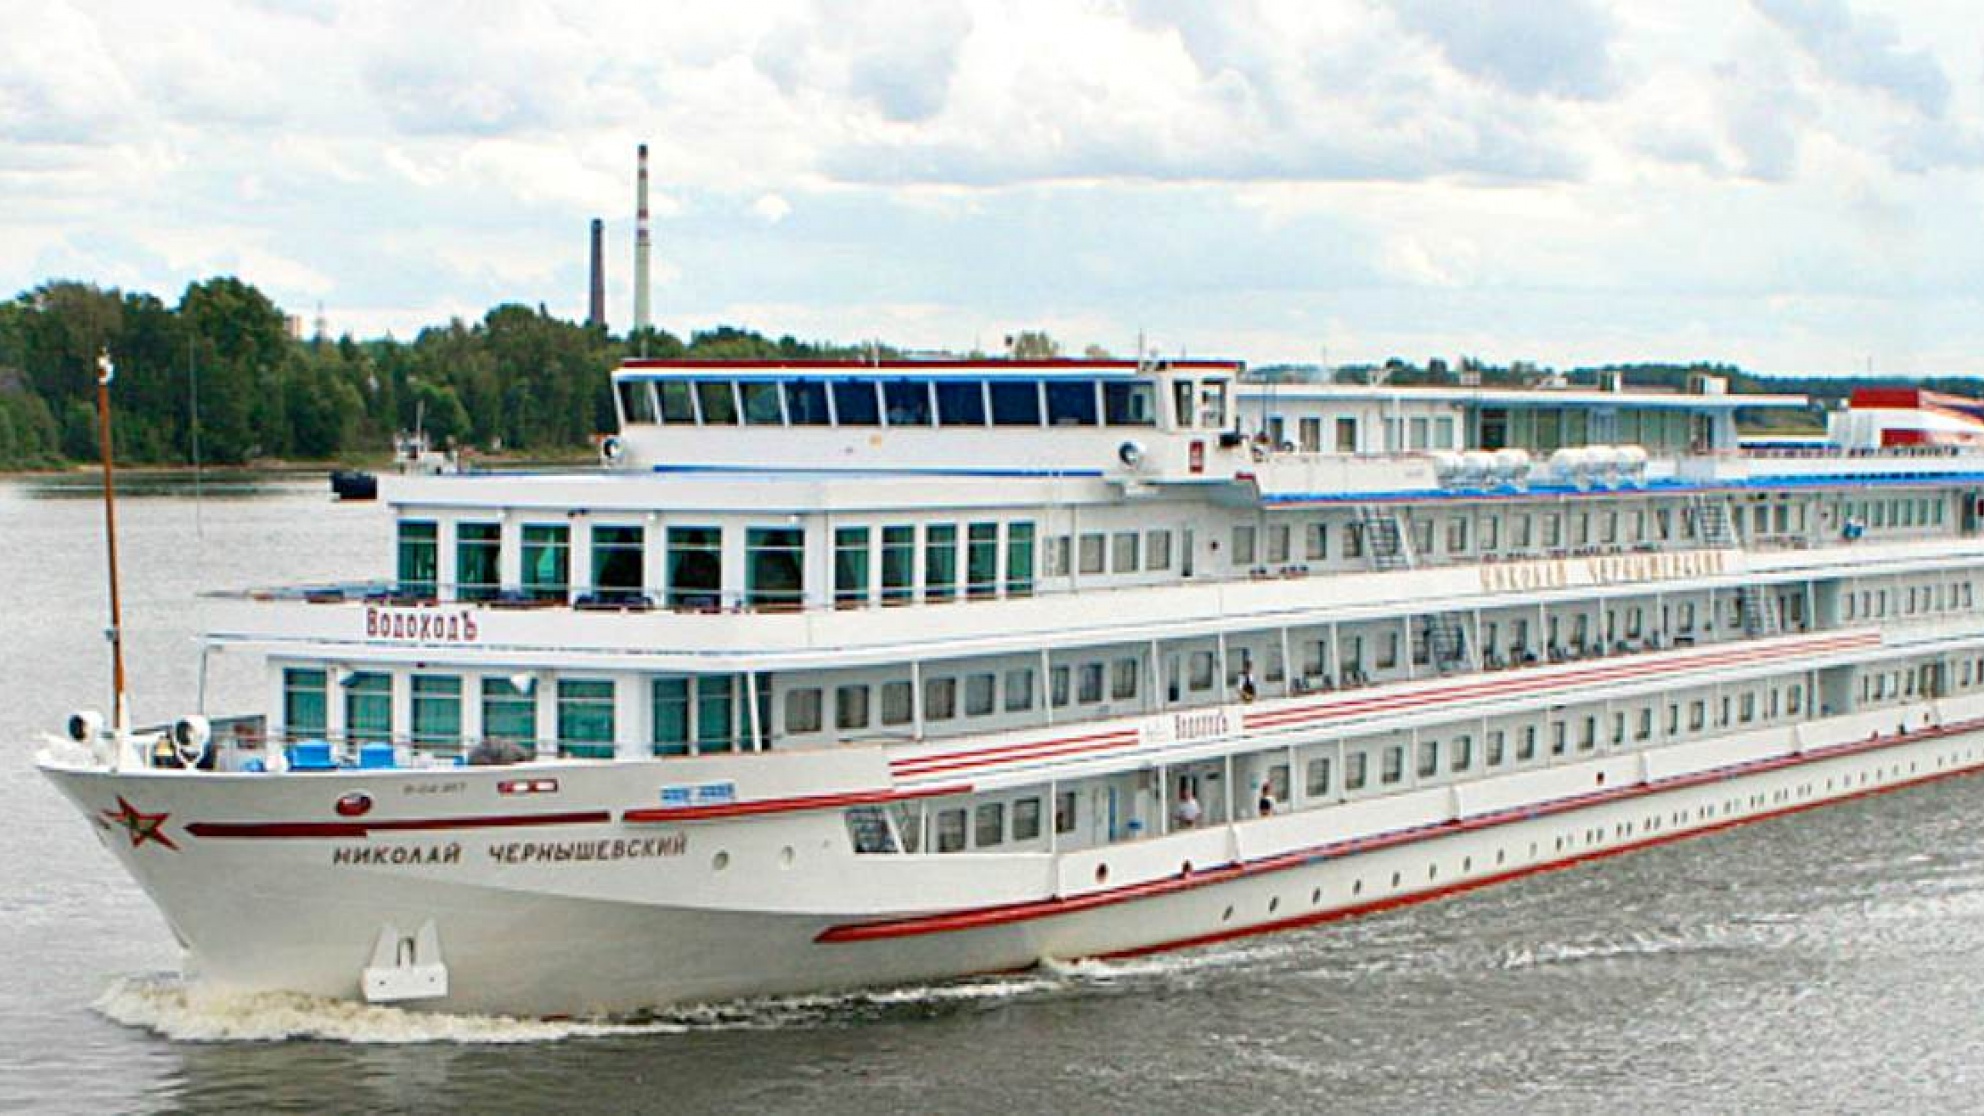 MS Chernishevsky Cruise Ship